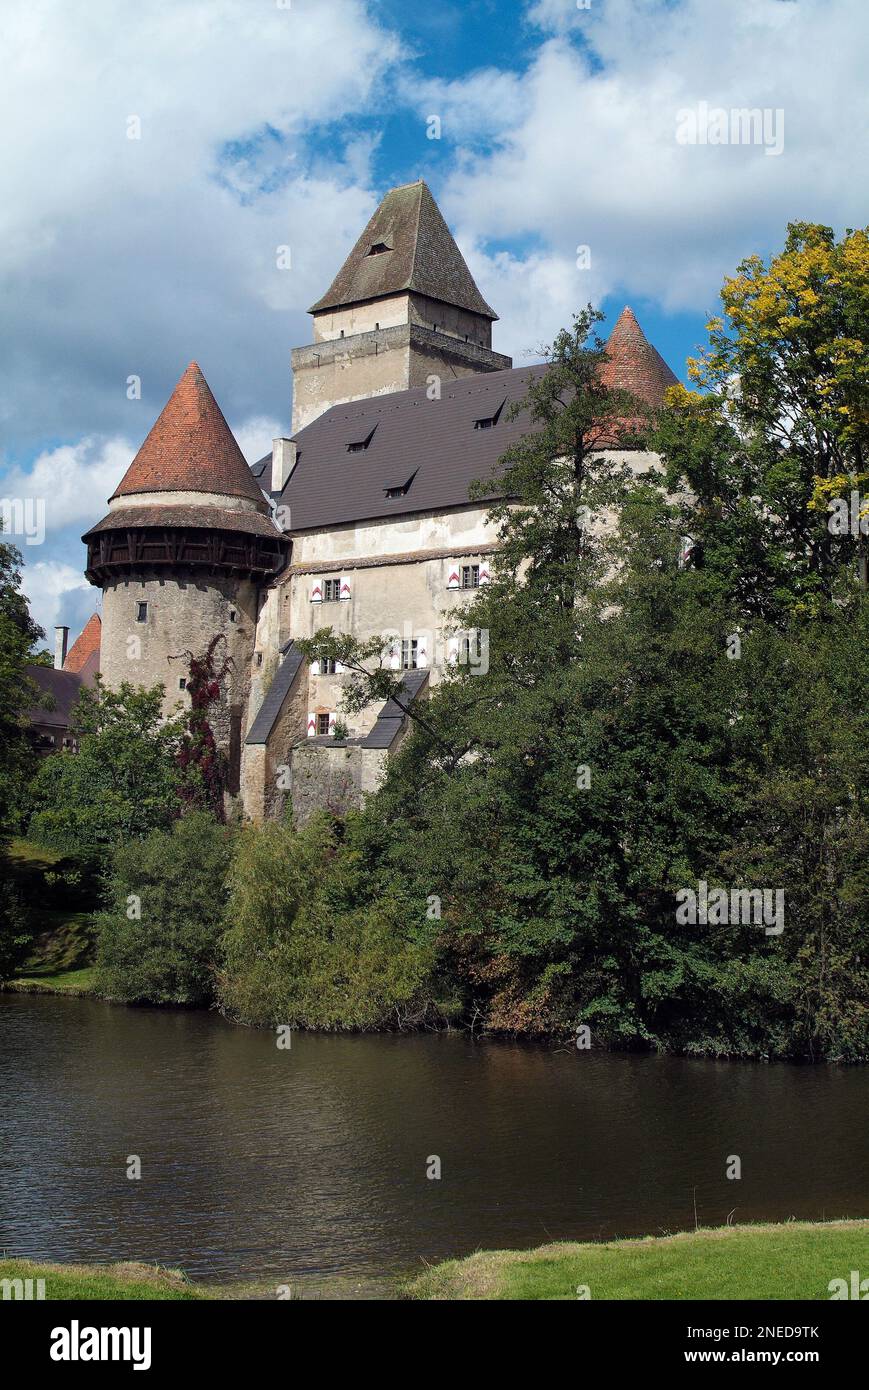 Austria, medieval Castle Heidenreichstein in Lower Austria Stock Photo